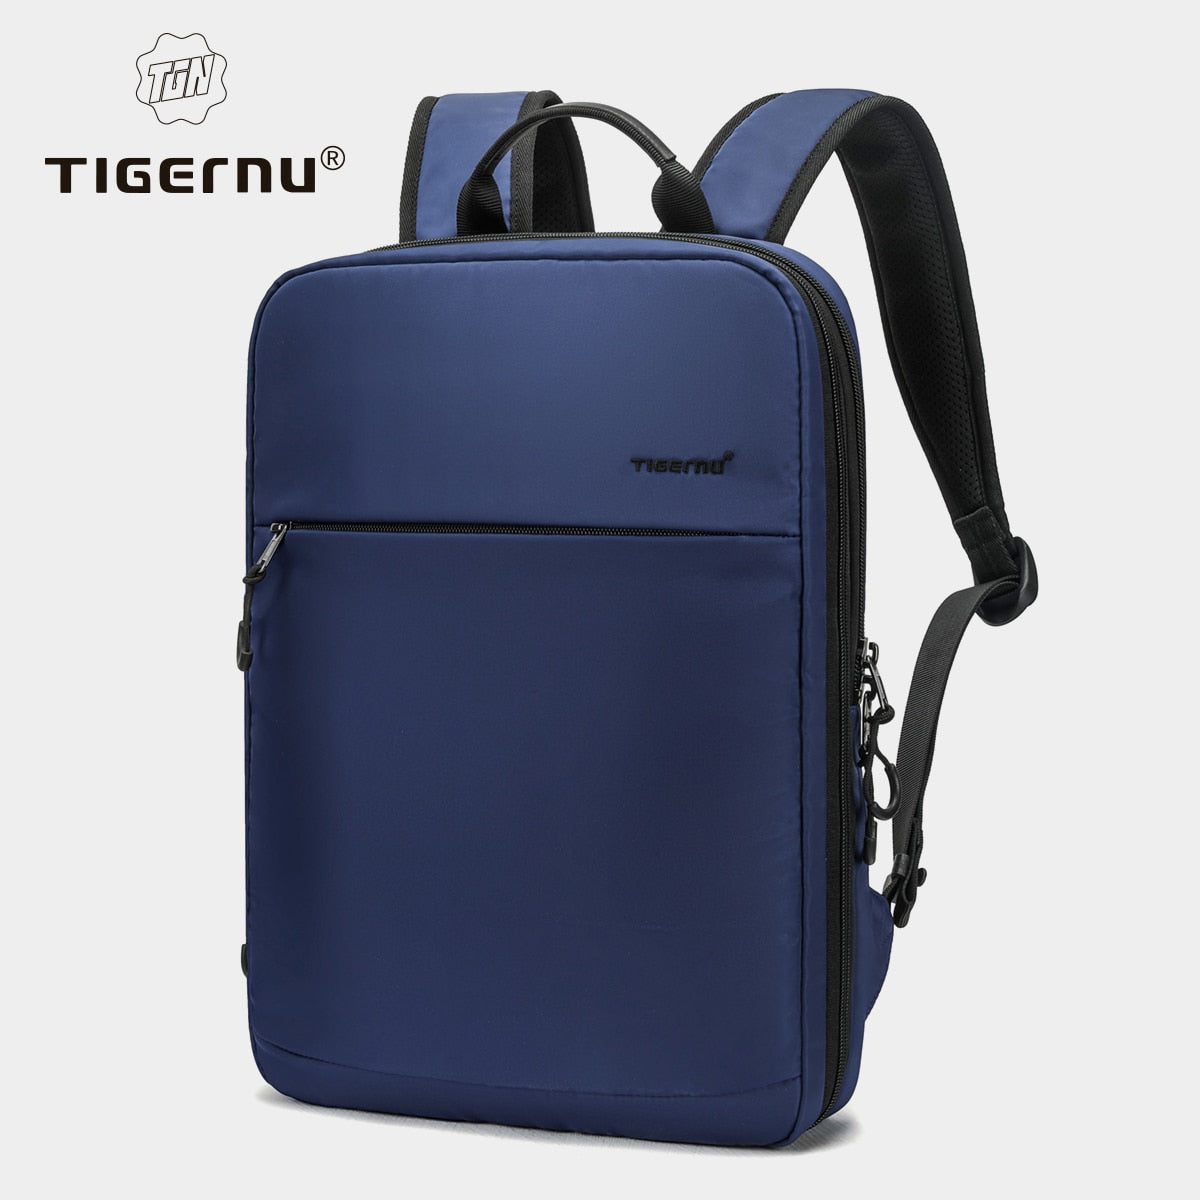 Durable Expandable Men's Laptop Backpack